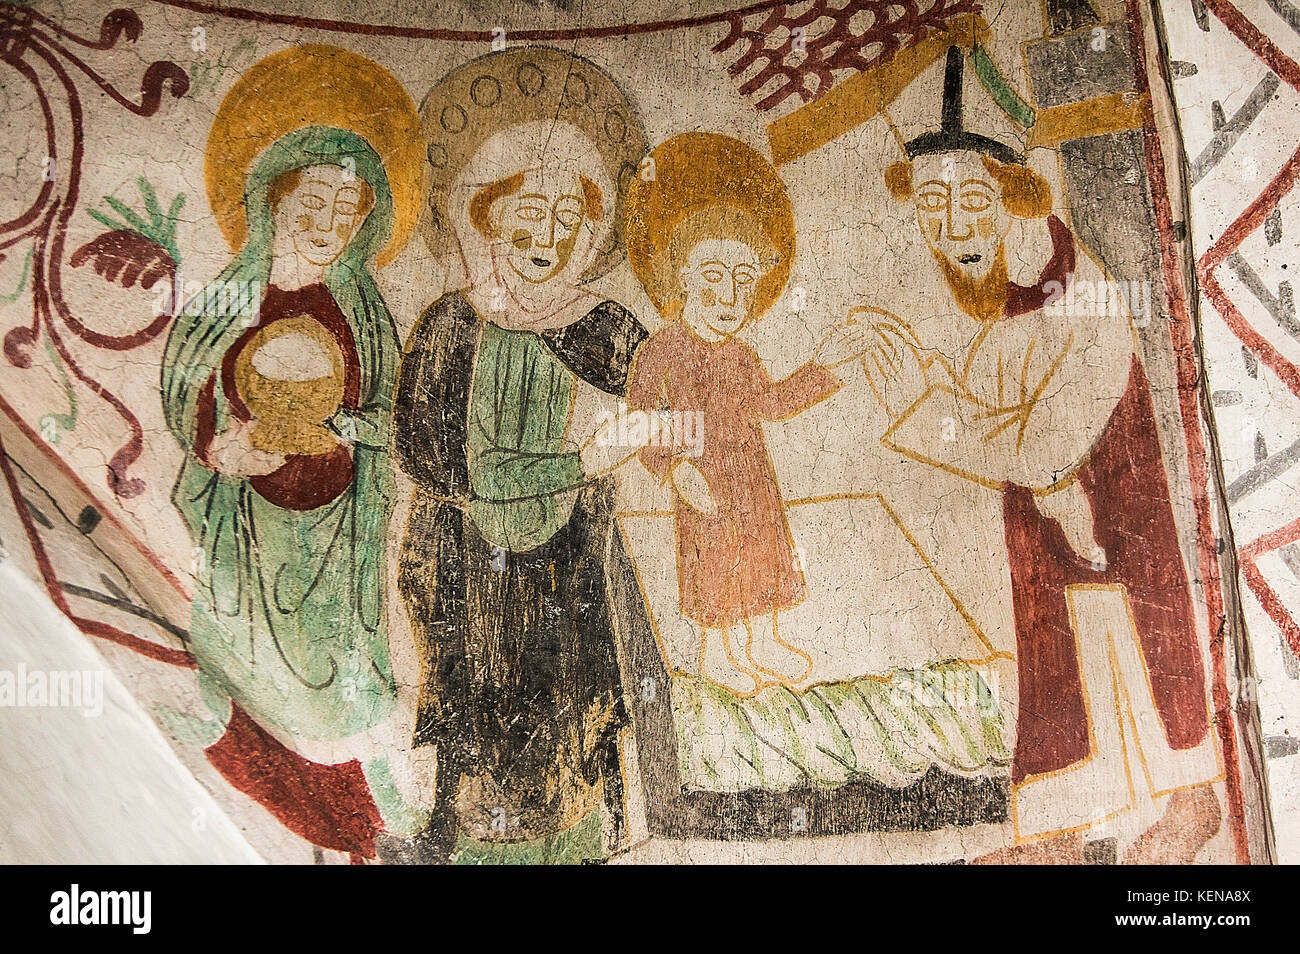 Danese del tardo medioevo religiosi dipinti ad affresco raffigurante una sezione da Maria la presentazione di Gesù al tempio. L'uomo sul lato destro con un cappello che ho Foto Stock